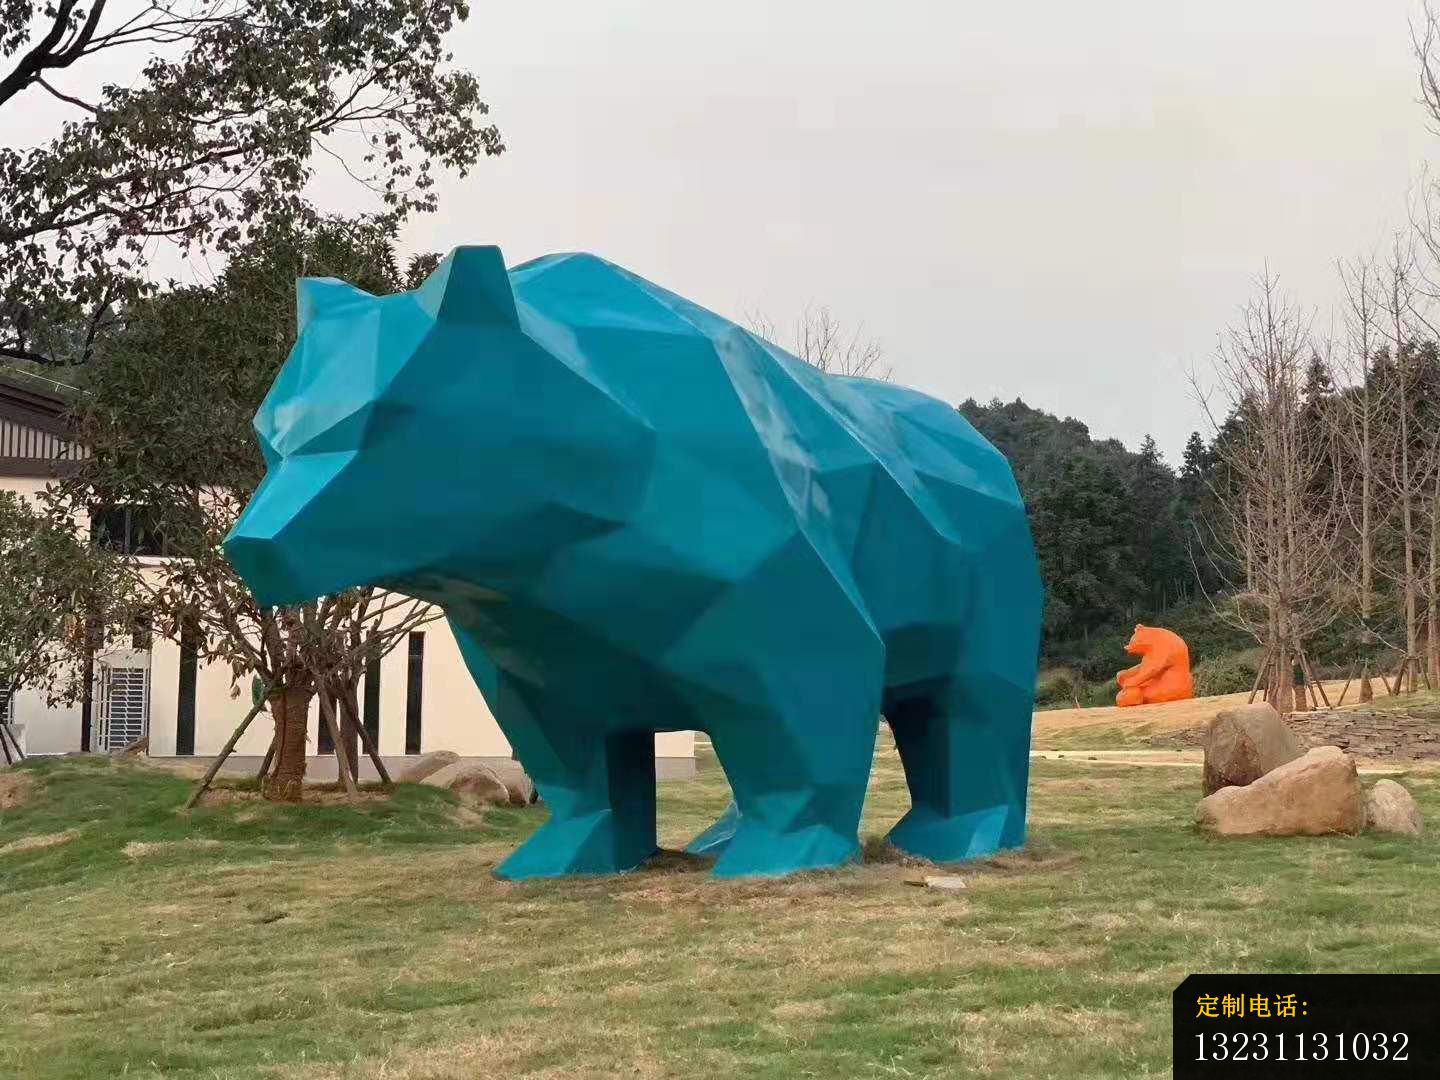 玻璃钢大型几何熊雕塑公园景观雕塑 (4)_1440*1080